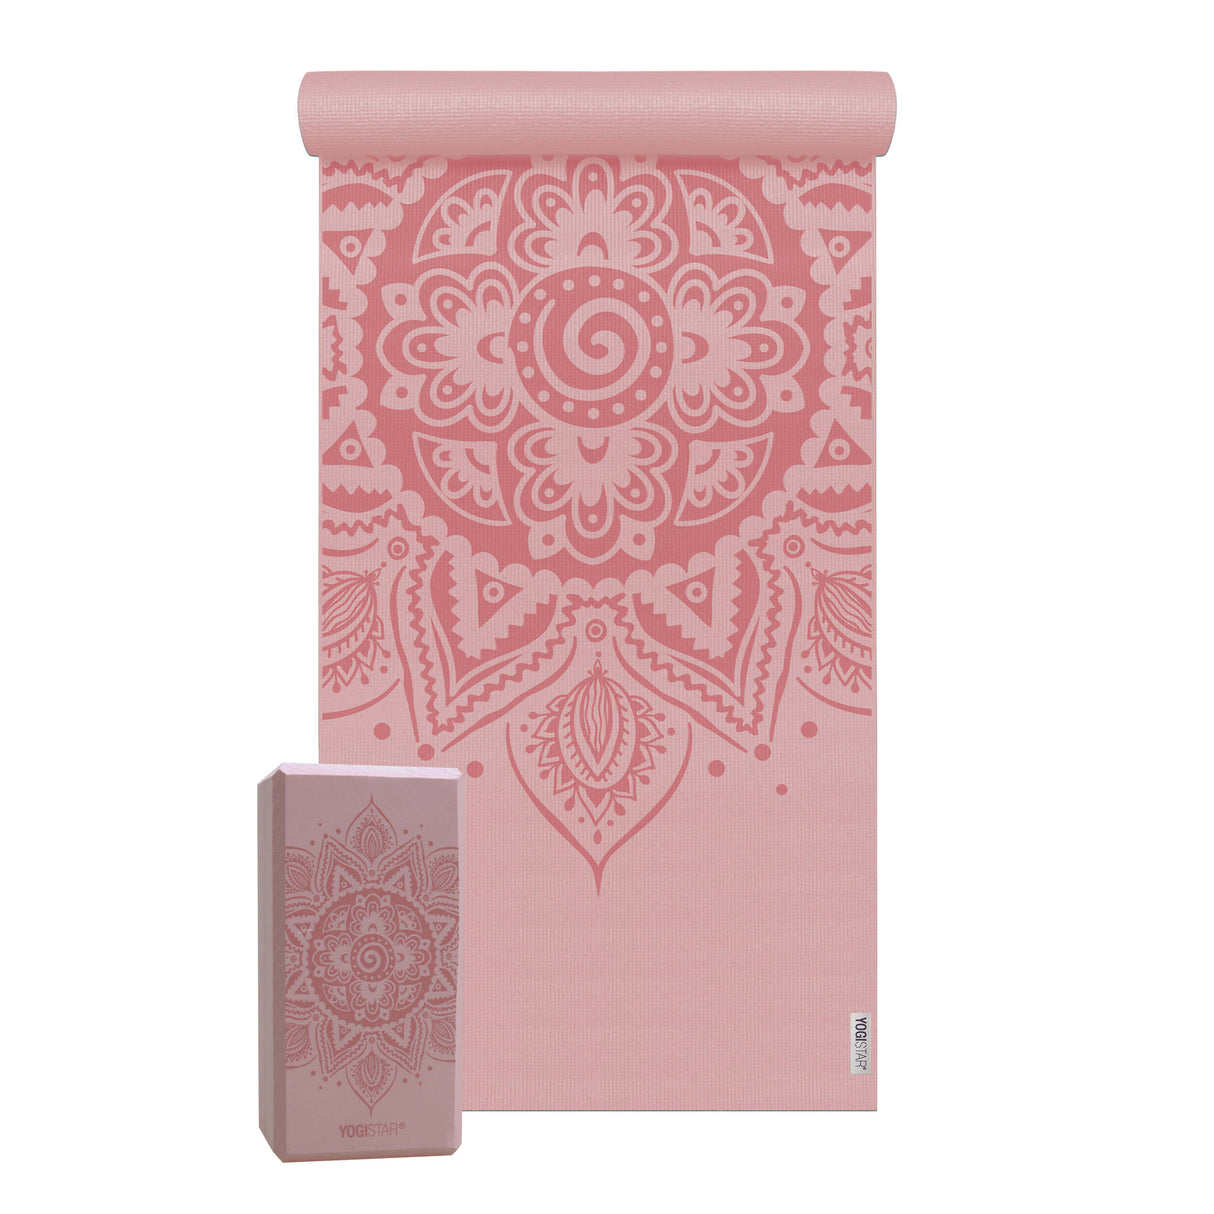 Yoga-Set Starter Edition - spiral mandala (Yogamatte + 1 Yogablock) - velvet rose